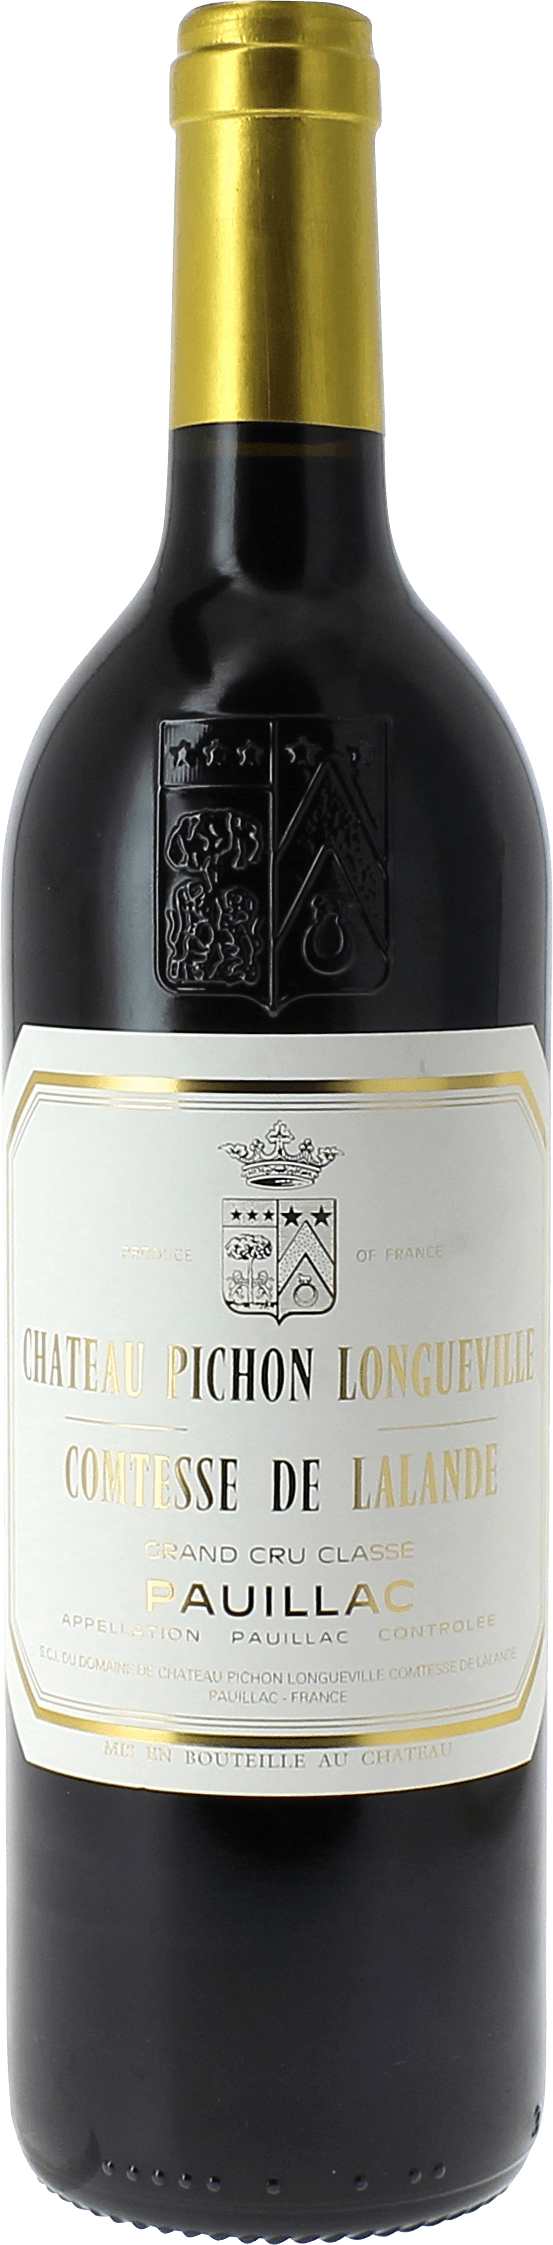 Pichon comtesse de lalande 2019 2me Grand cru class Pauillac, Bordeaux rouge